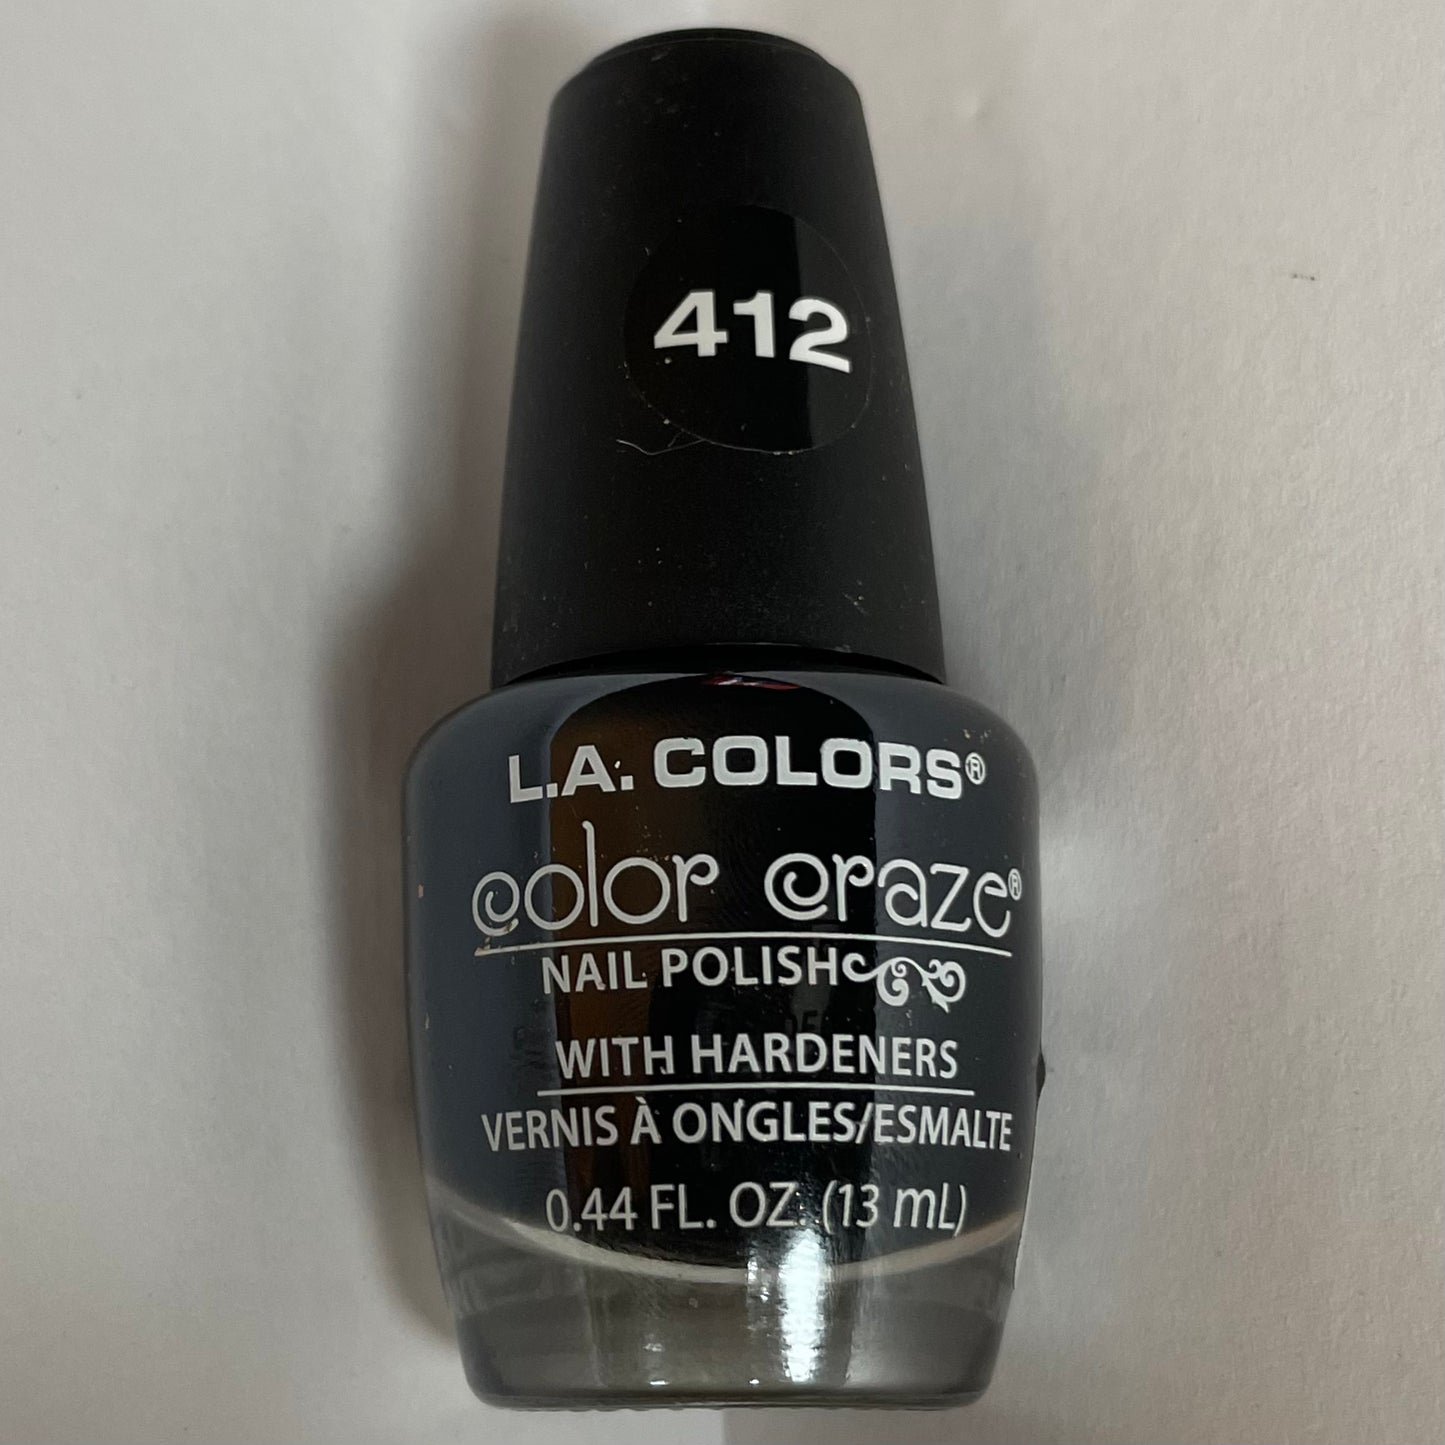 L.A. Colors Color Craze Nail Polish